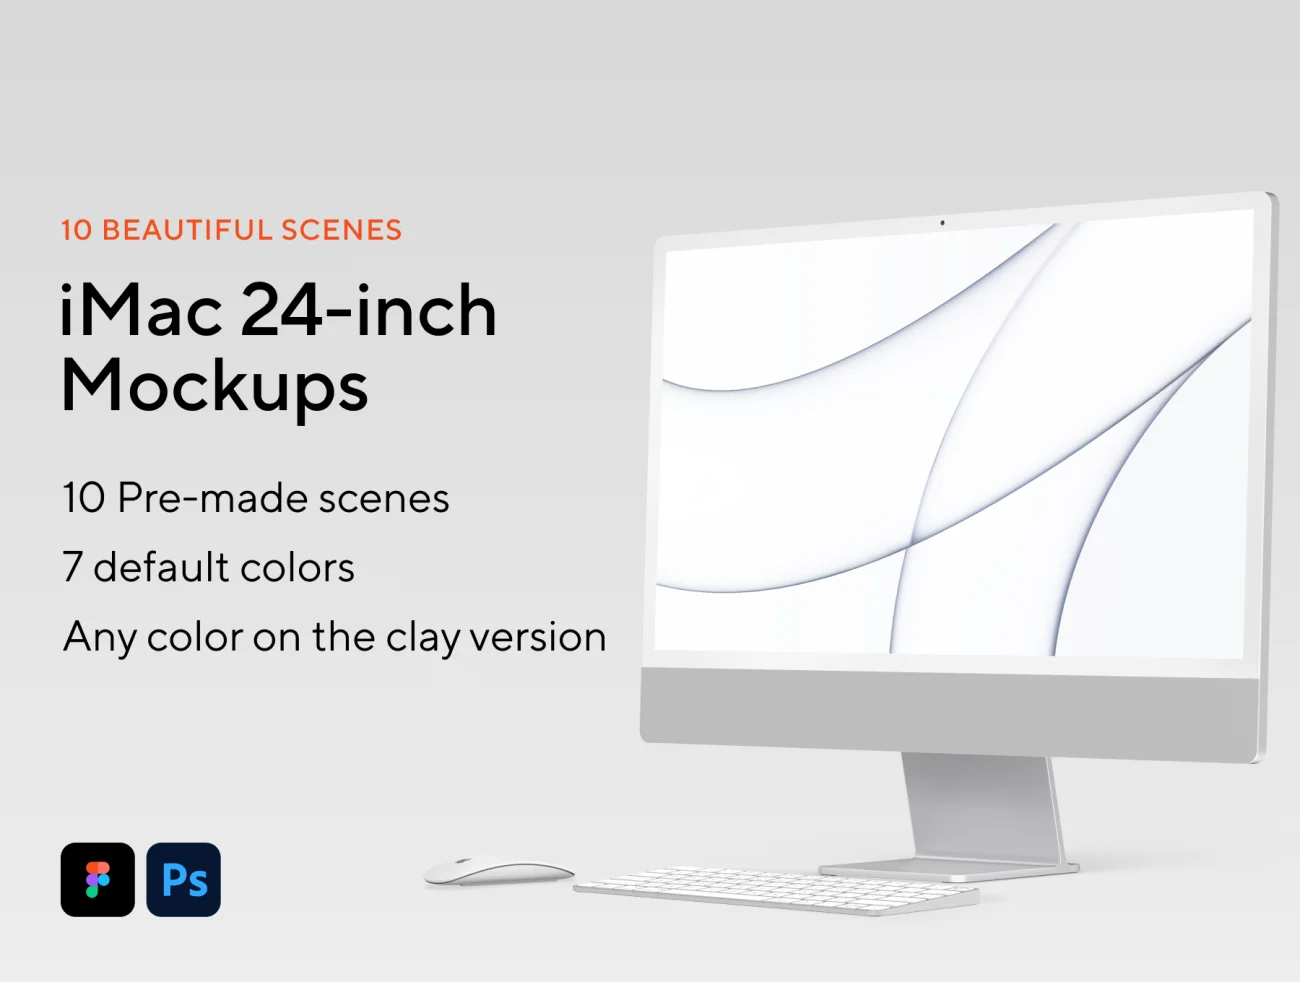 10款24寸新款苹果电脑iMac智能样机素材 iMac 24-inch Mockups-产品展示、优雅样机、办公样机、样机、苹果设备-到位啦UI